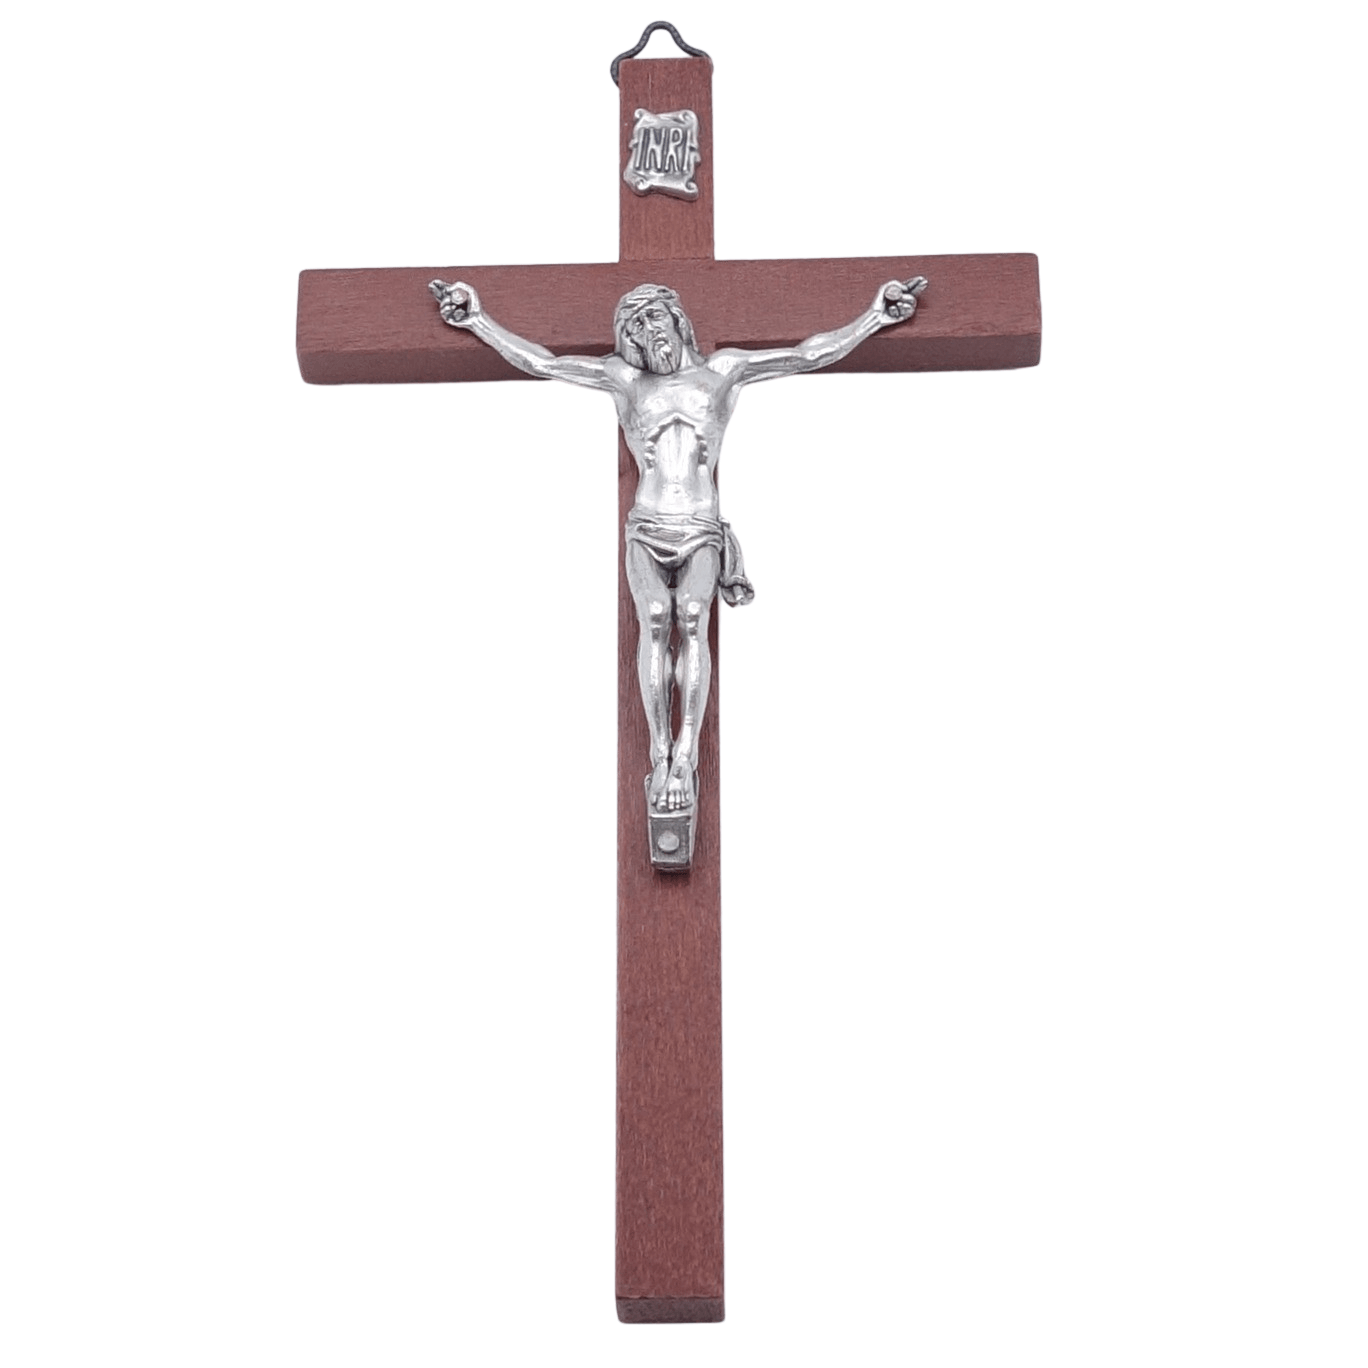 Croix bois christ 18x10 cm - Croix bois christ 18x10 cm